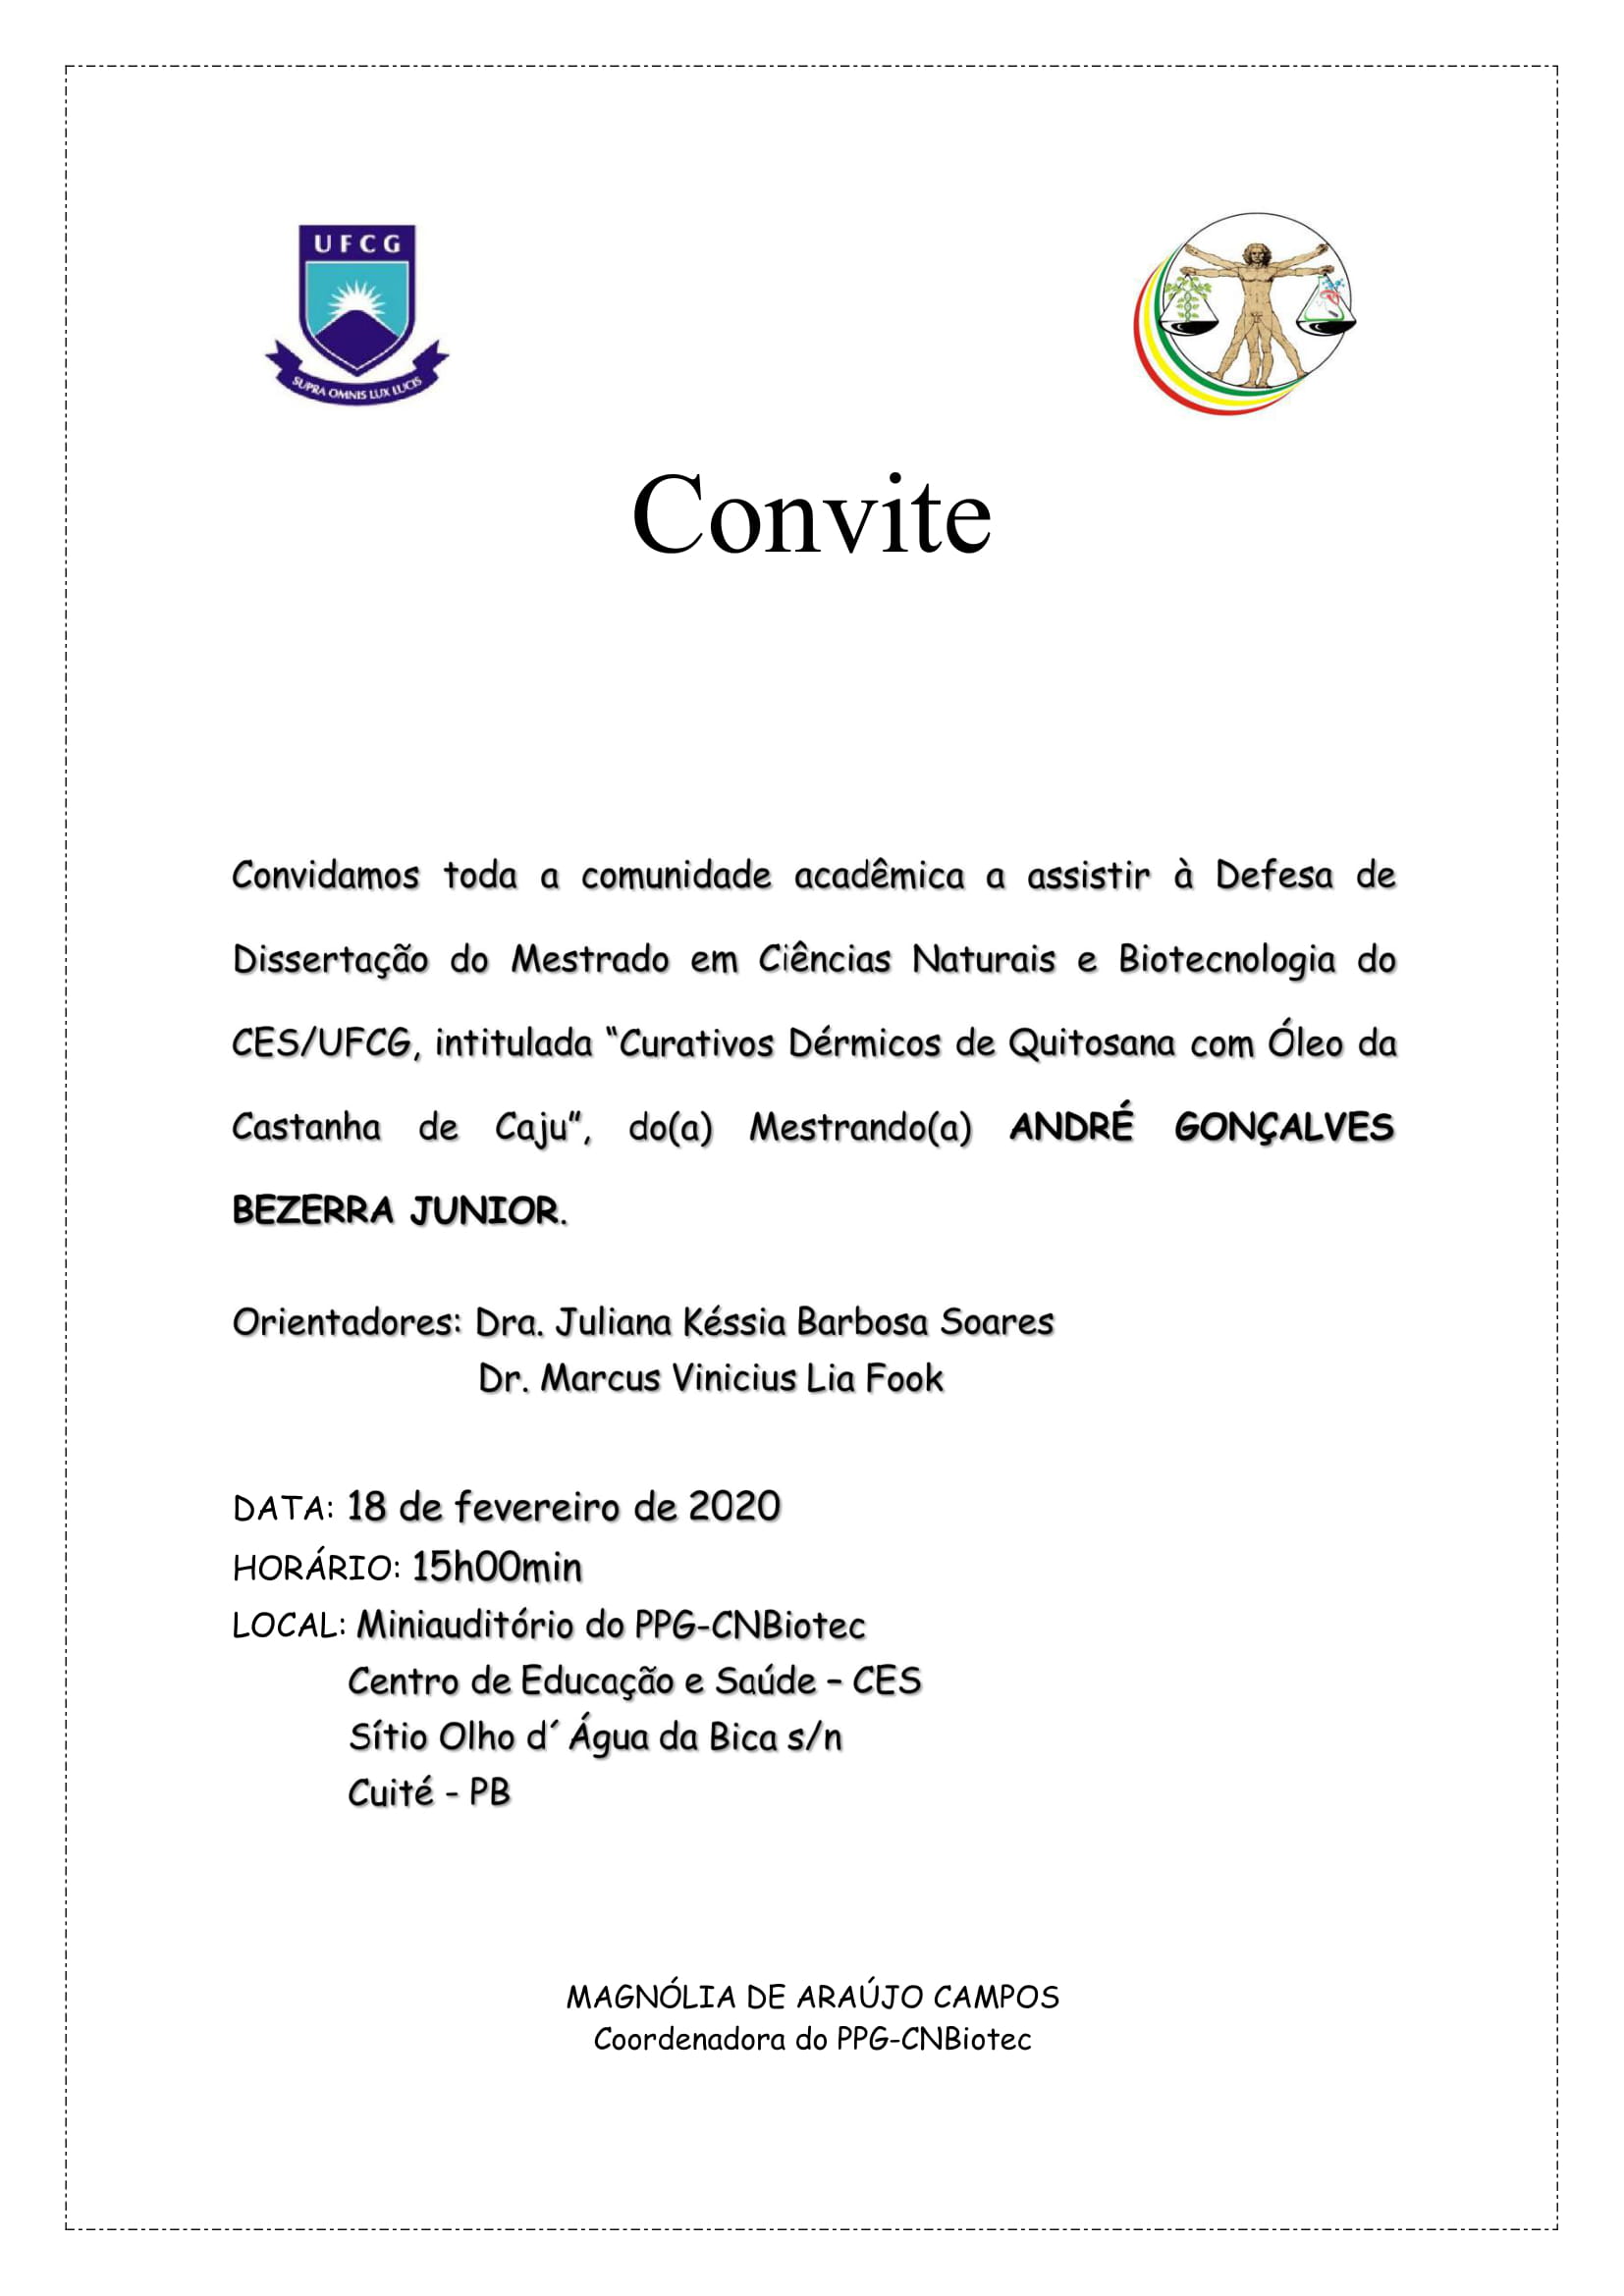 Convite Publico Andre Goncalves